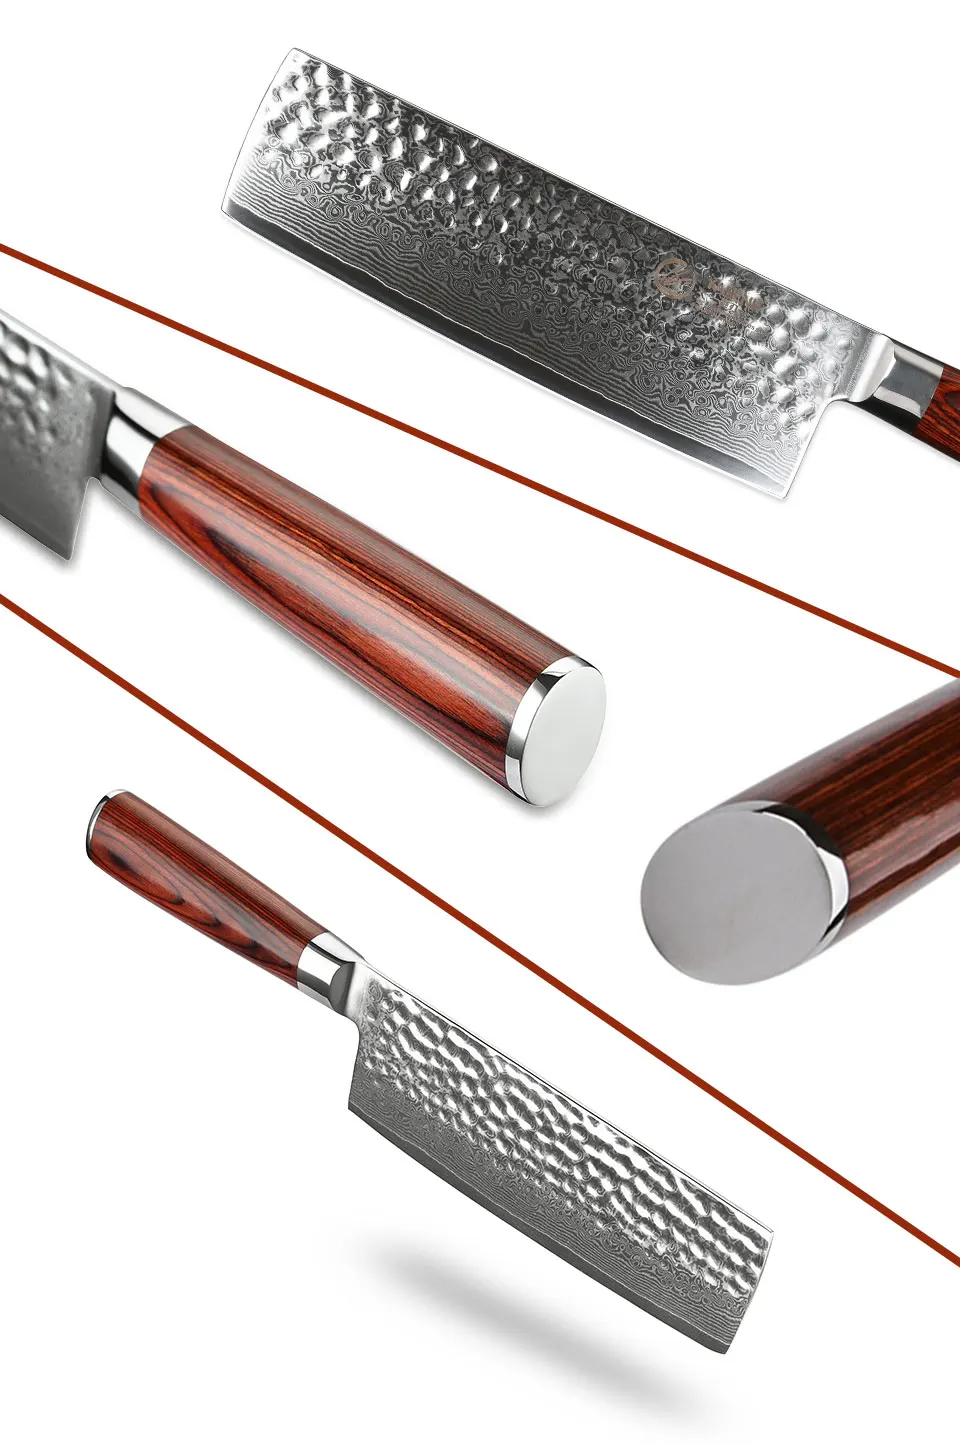 Yarenh острый нож дамаск 7"- кованный ножи кухонные высокого качества из японский vg10 дамасская сталь- японские ножи для кухни